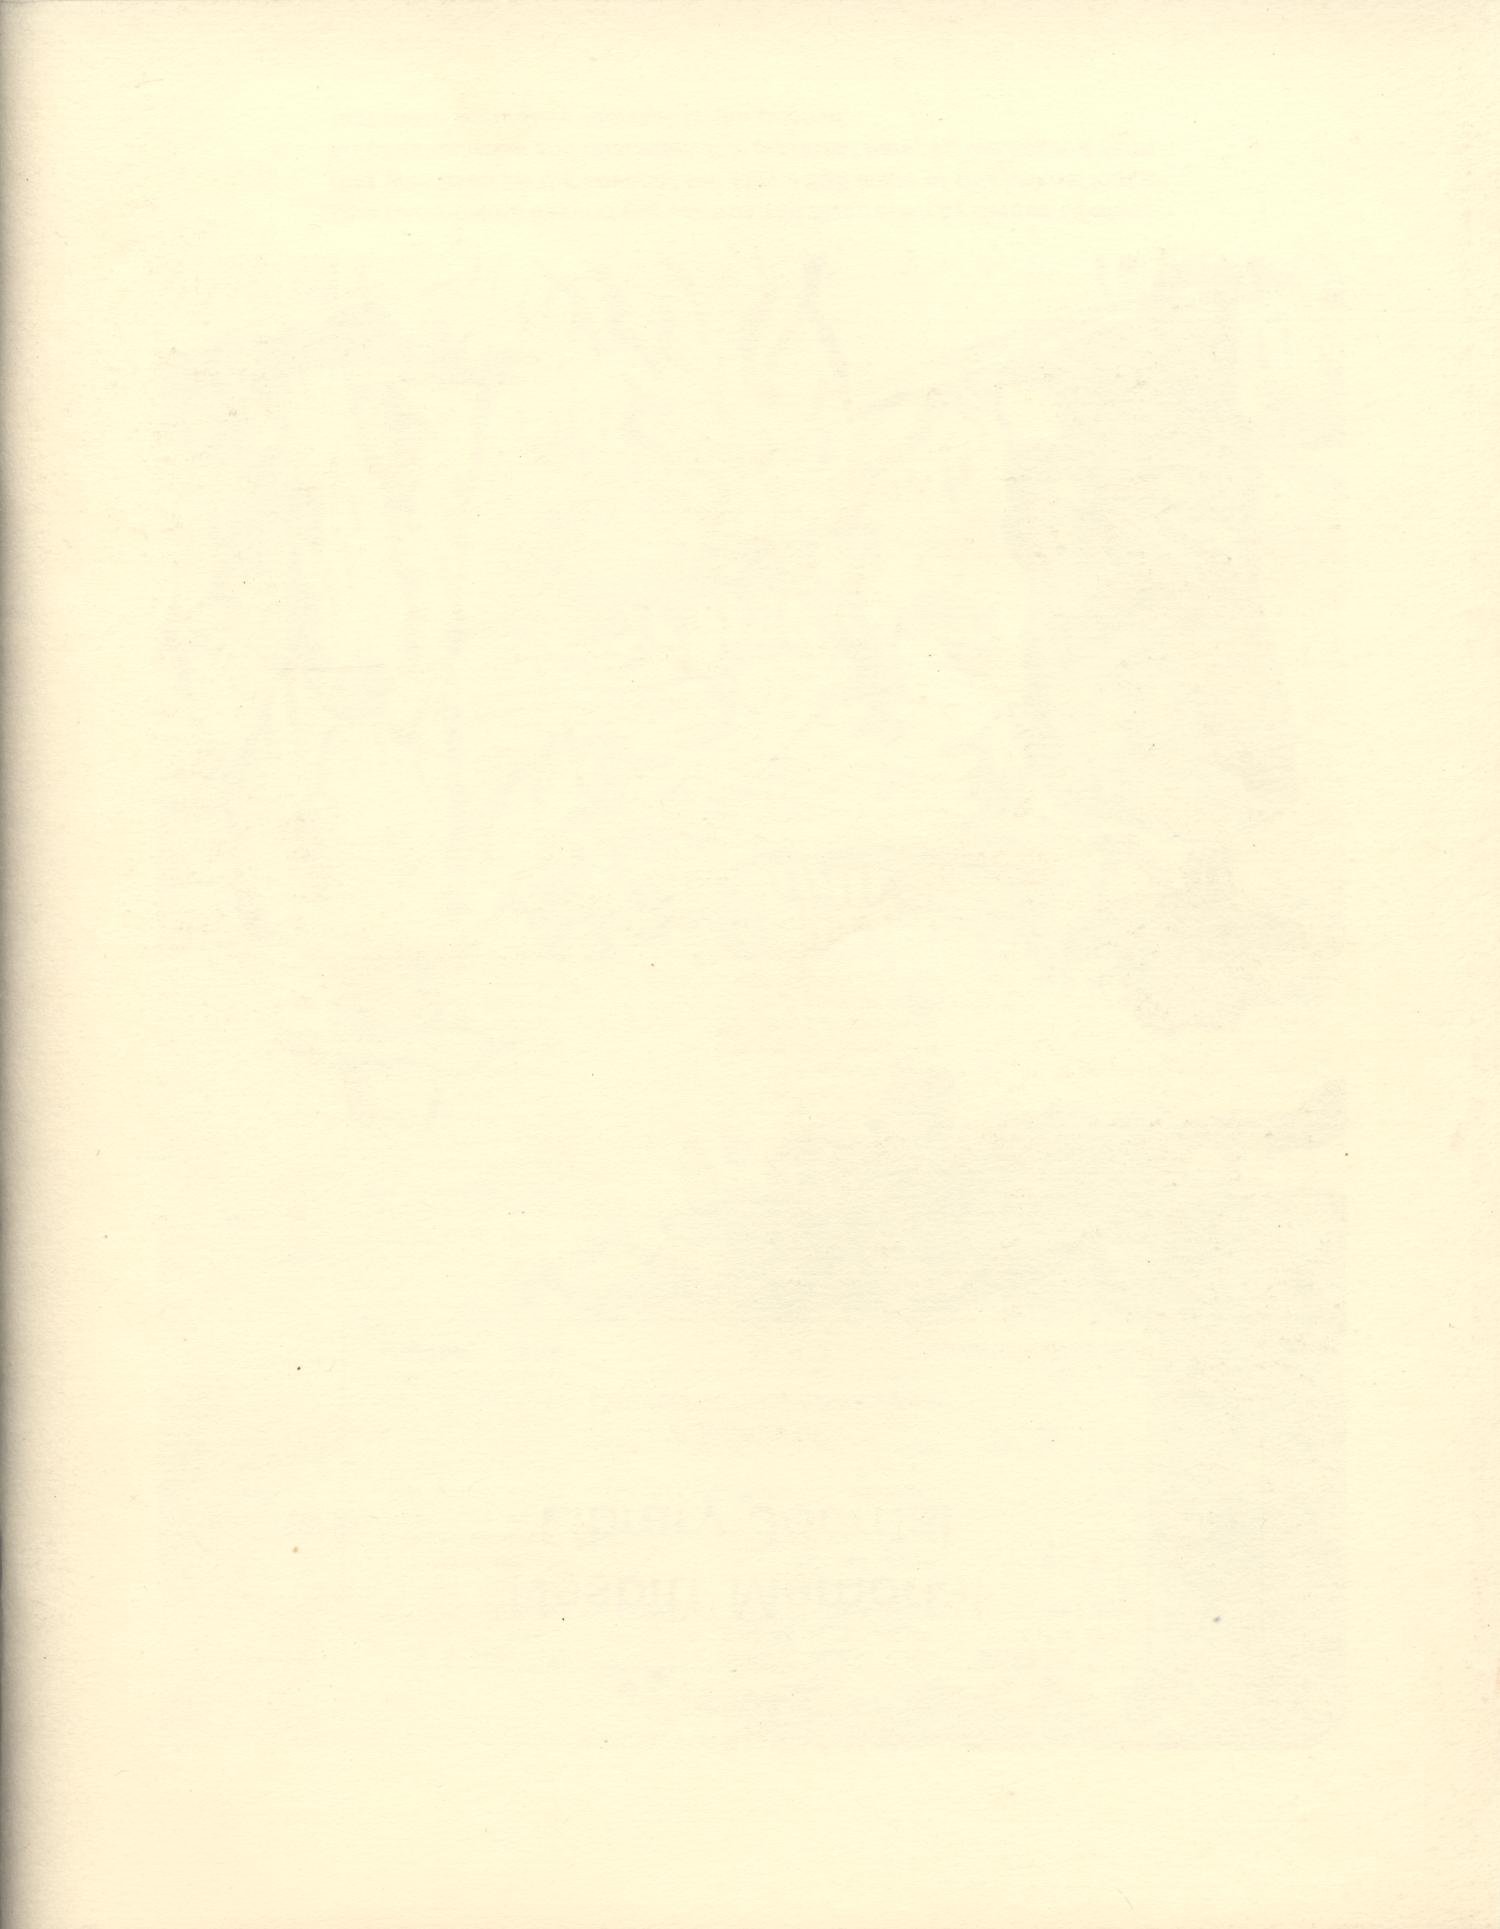 Nesbitt Memorial Library Journal, Volume 5, Number 3, September 1995
                                                
                                                    Back Cover
                                                